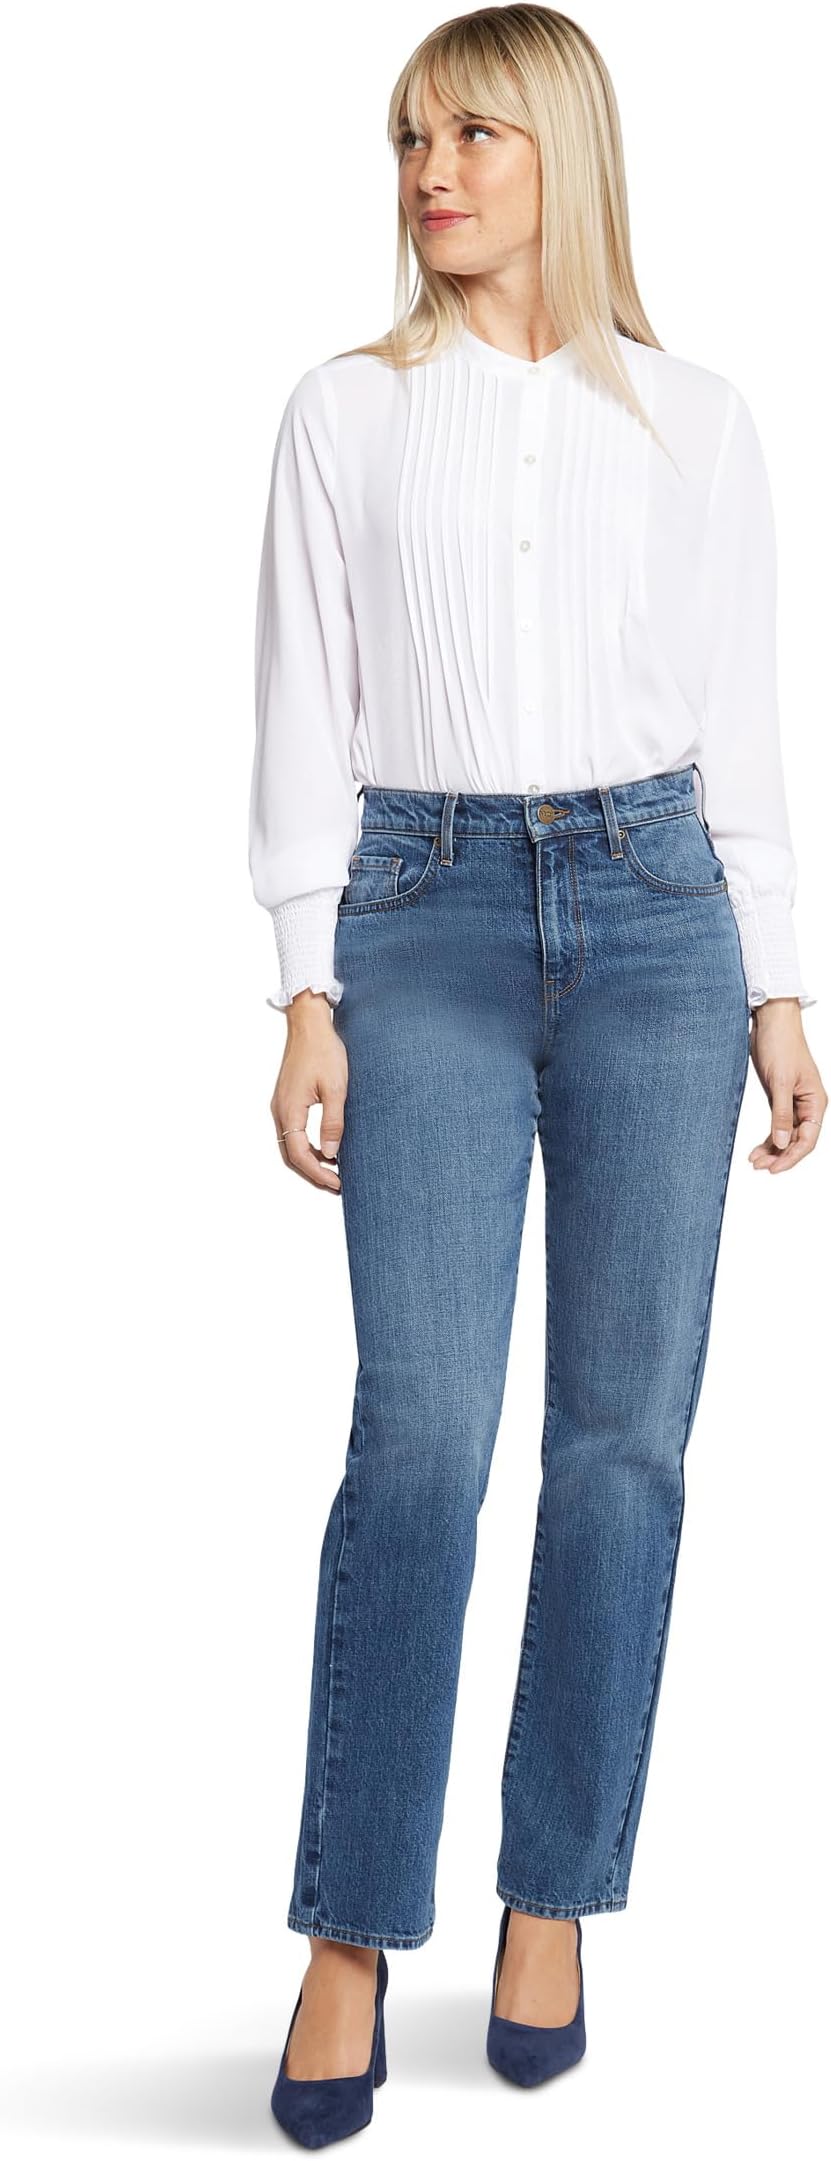 Джинсы Brooke High-Rise Loose Straight Jeans in Sawyer NYDJ, цвет Sawyer шина sam обычная sawyer